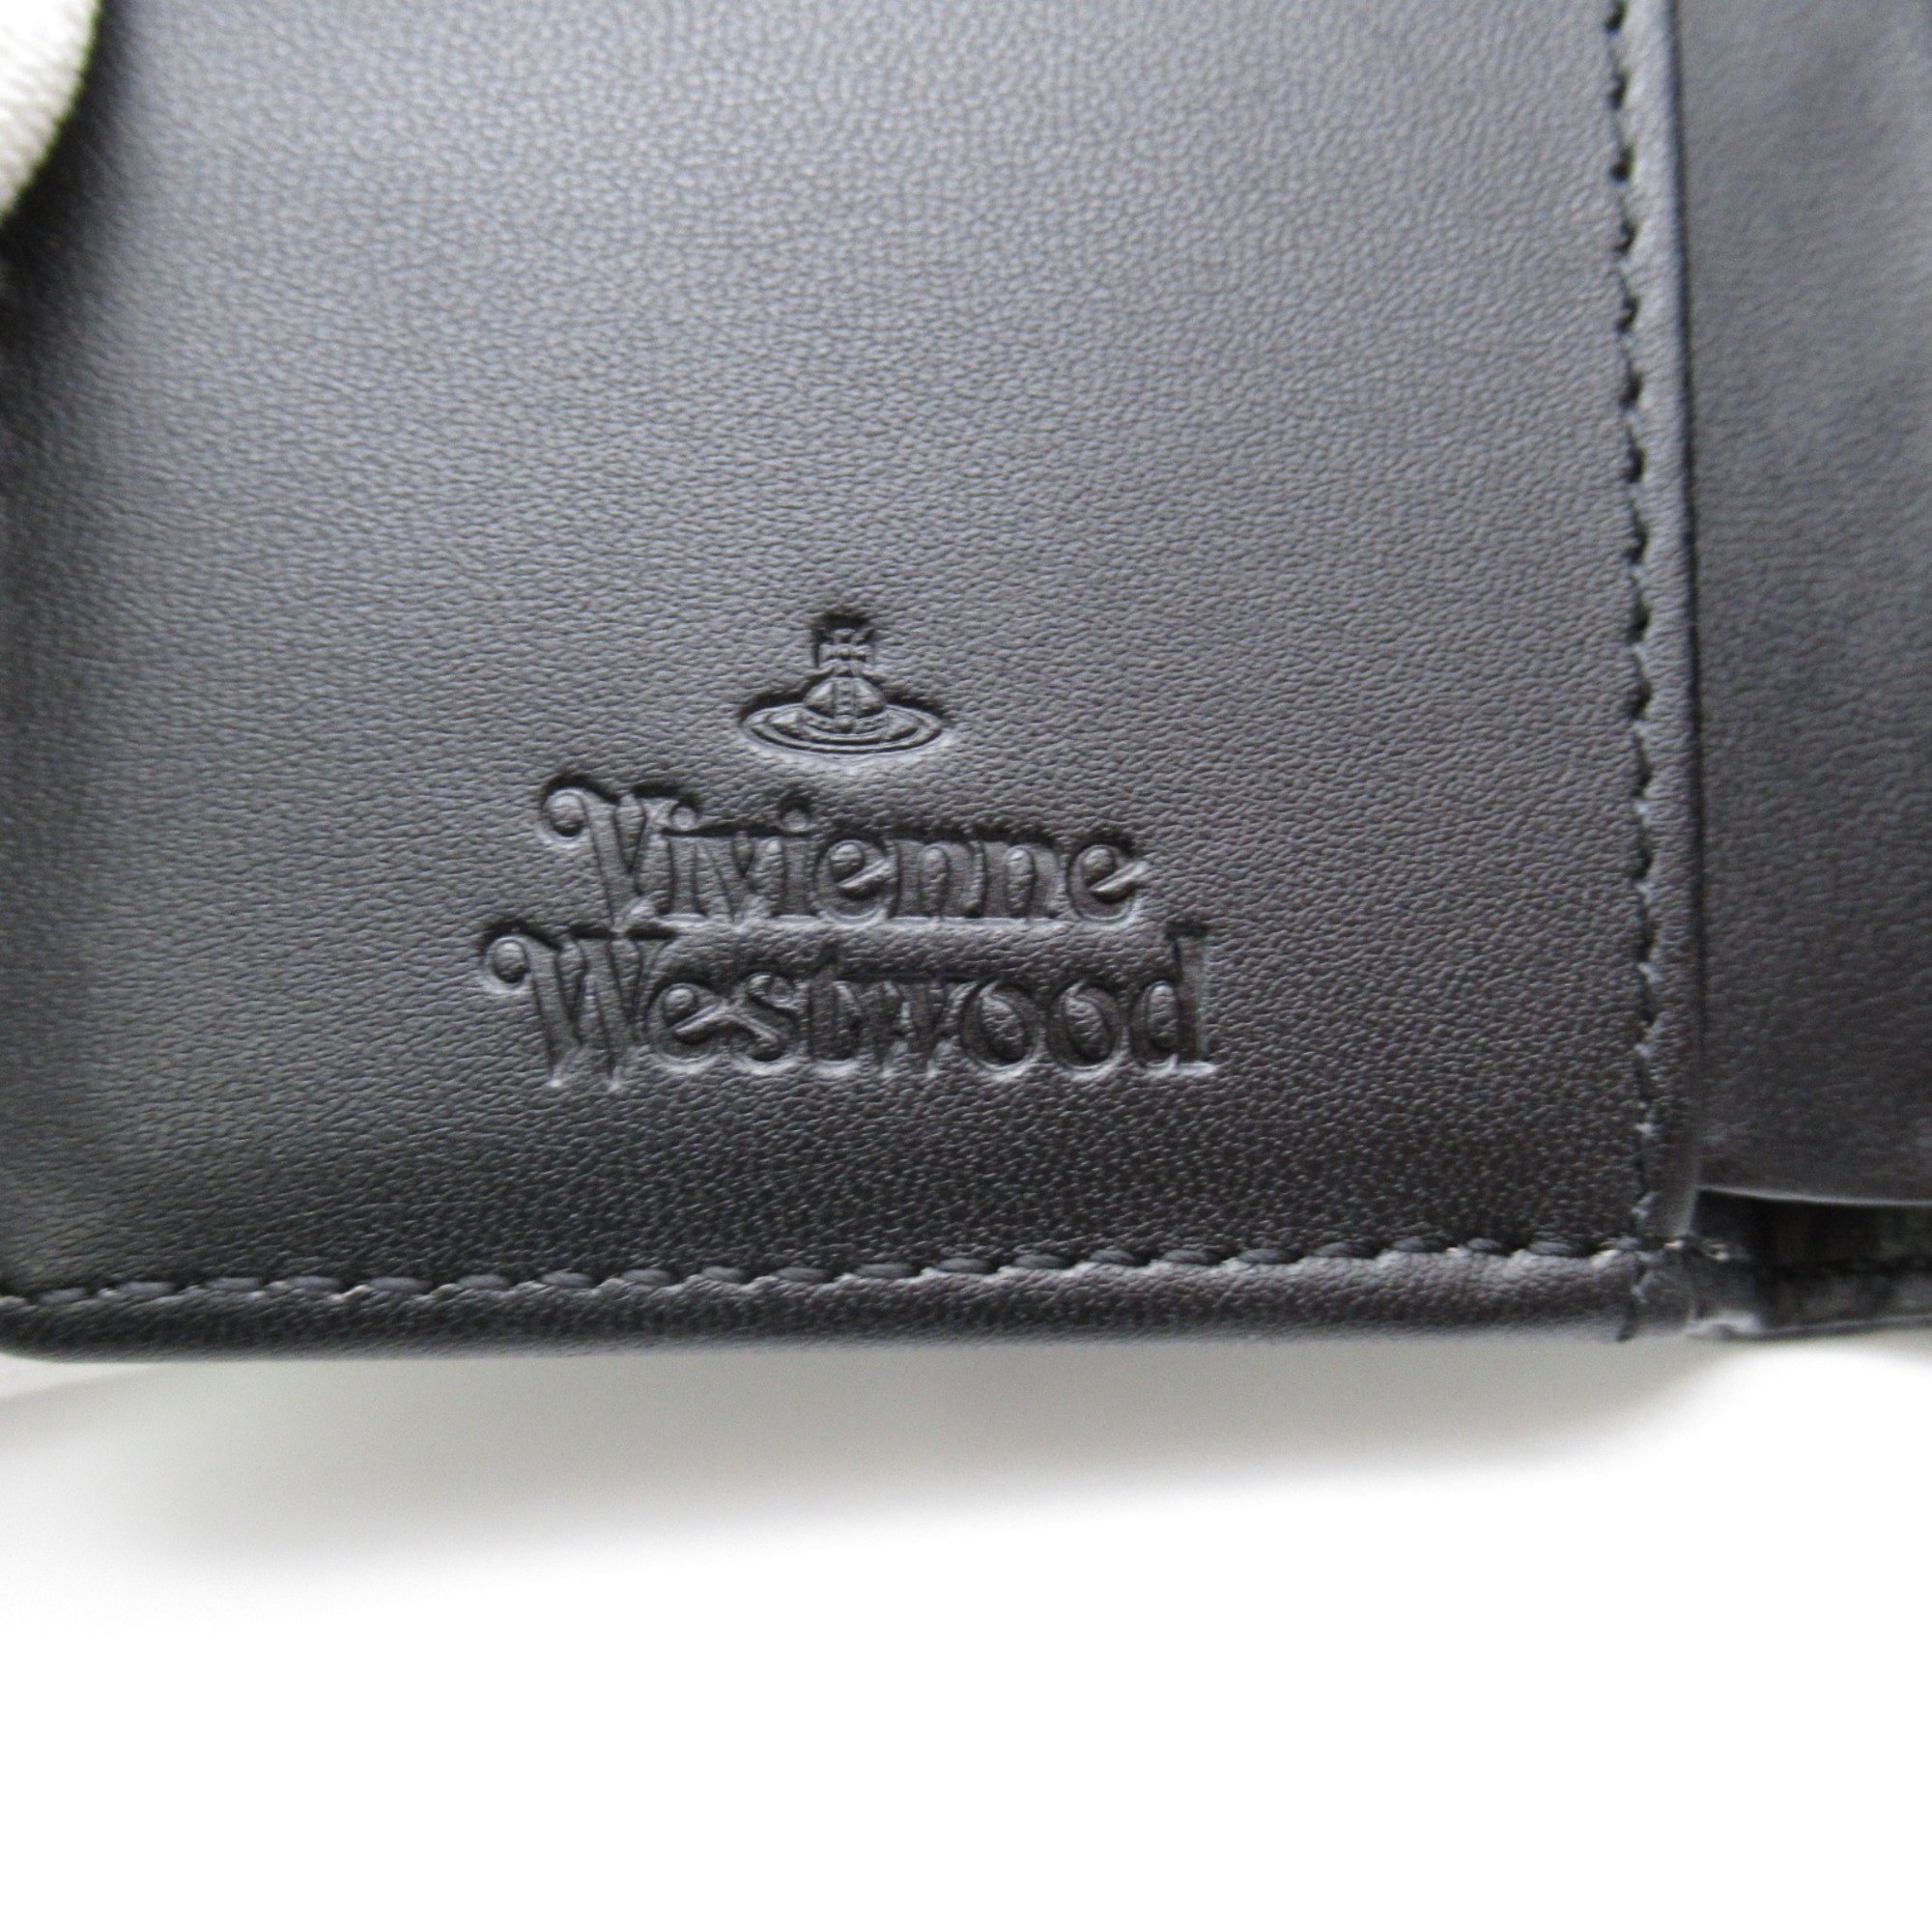 Vivienne Westwood Purse Wallet Black leather Grain leather 51010018S000DN403